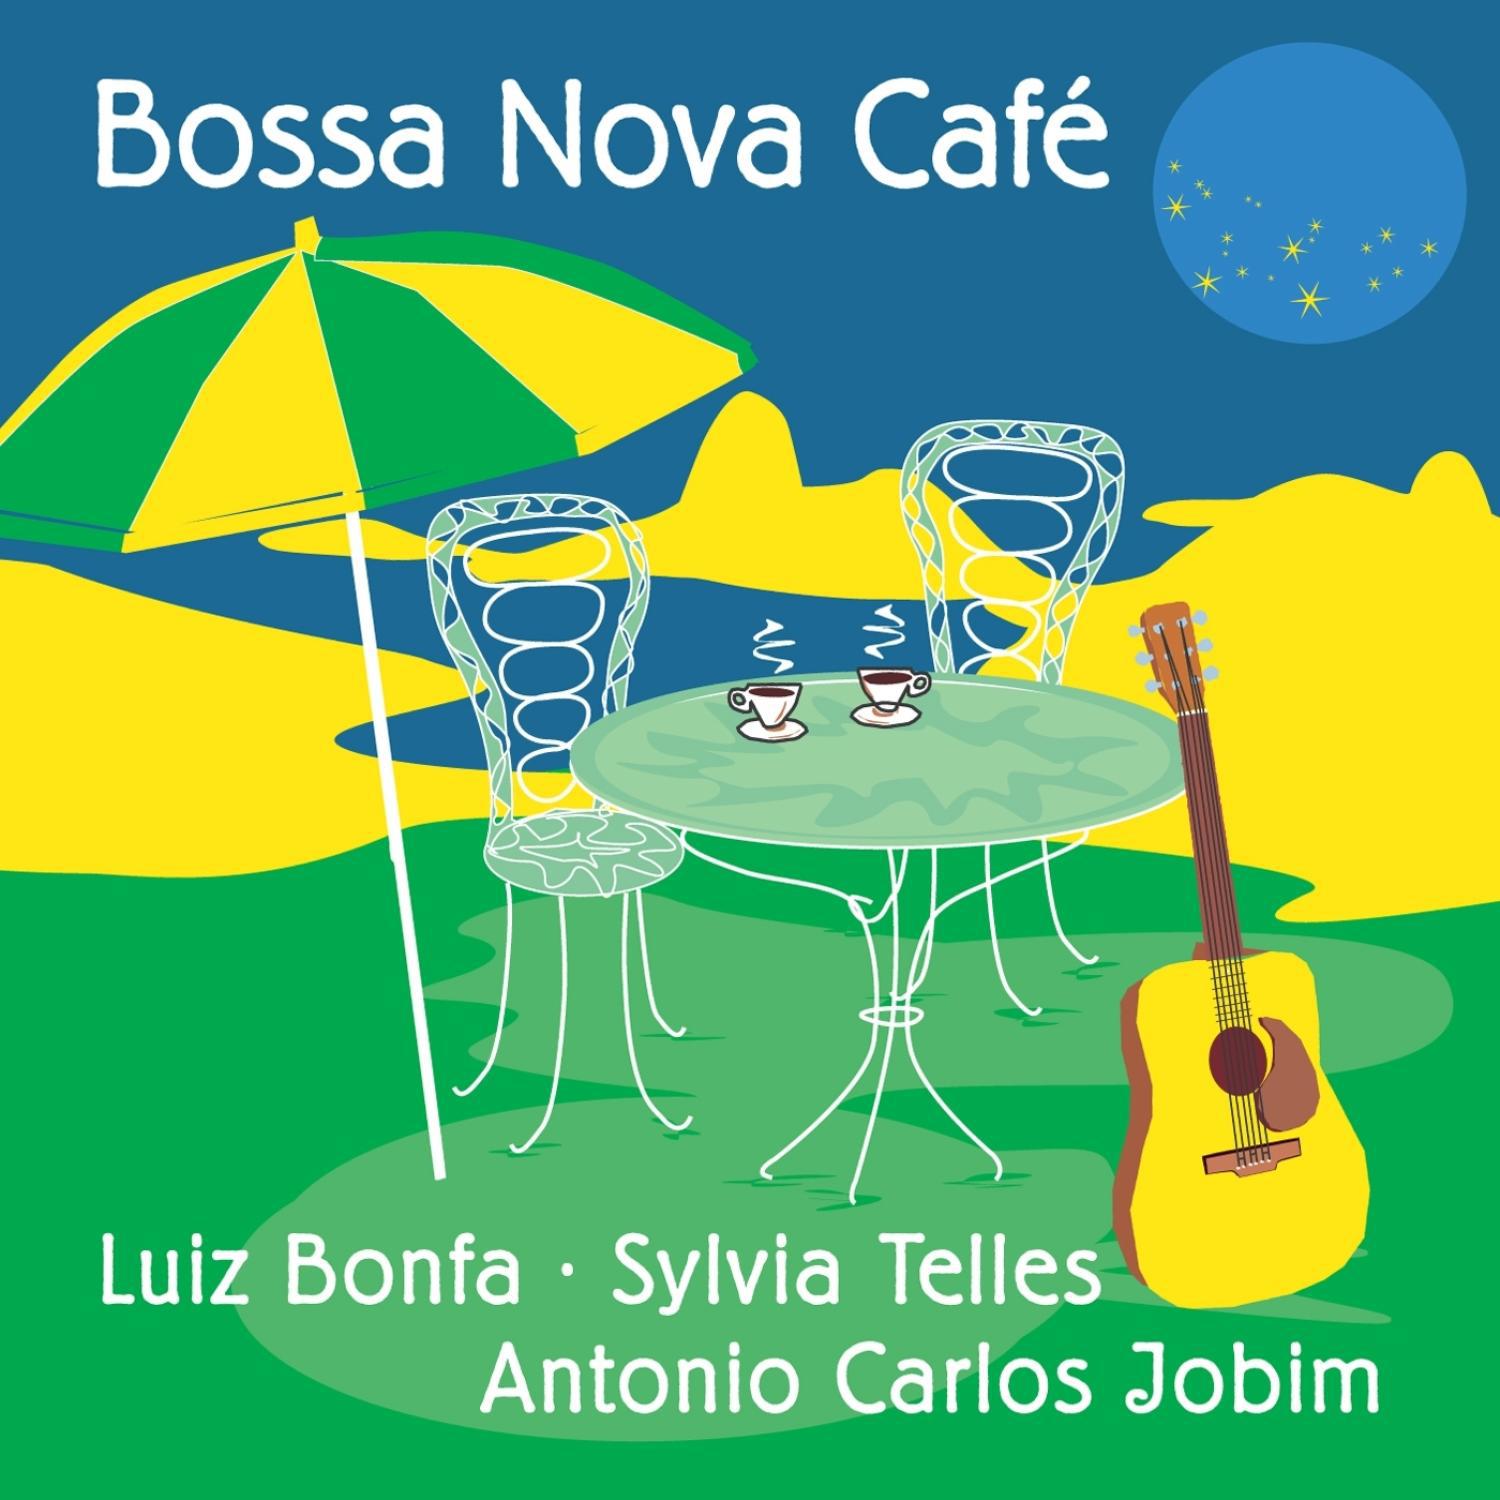 Bossa Nova Cafe